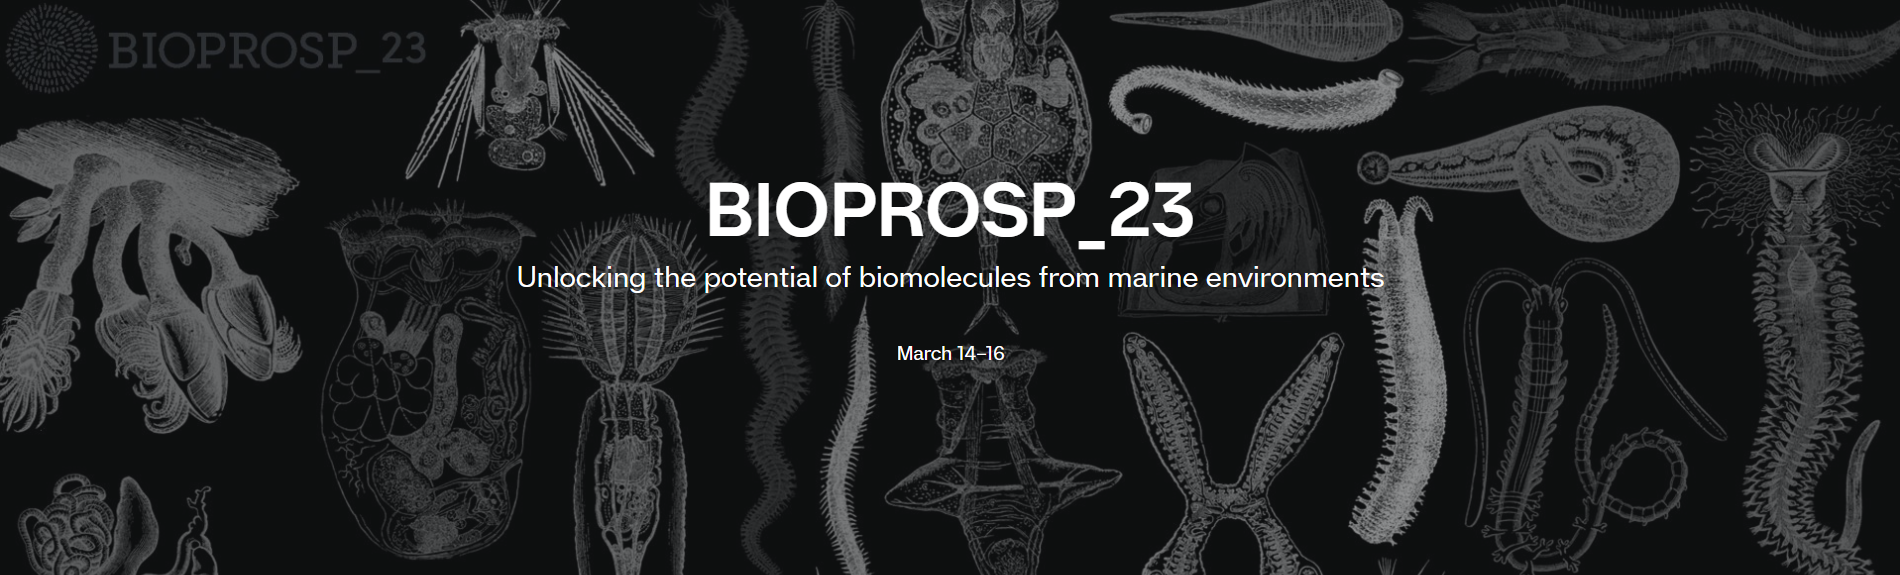 BIOPROSP_23, 14 al 16 de marzo. UIT-The Arctic University of Norway, Tromsø